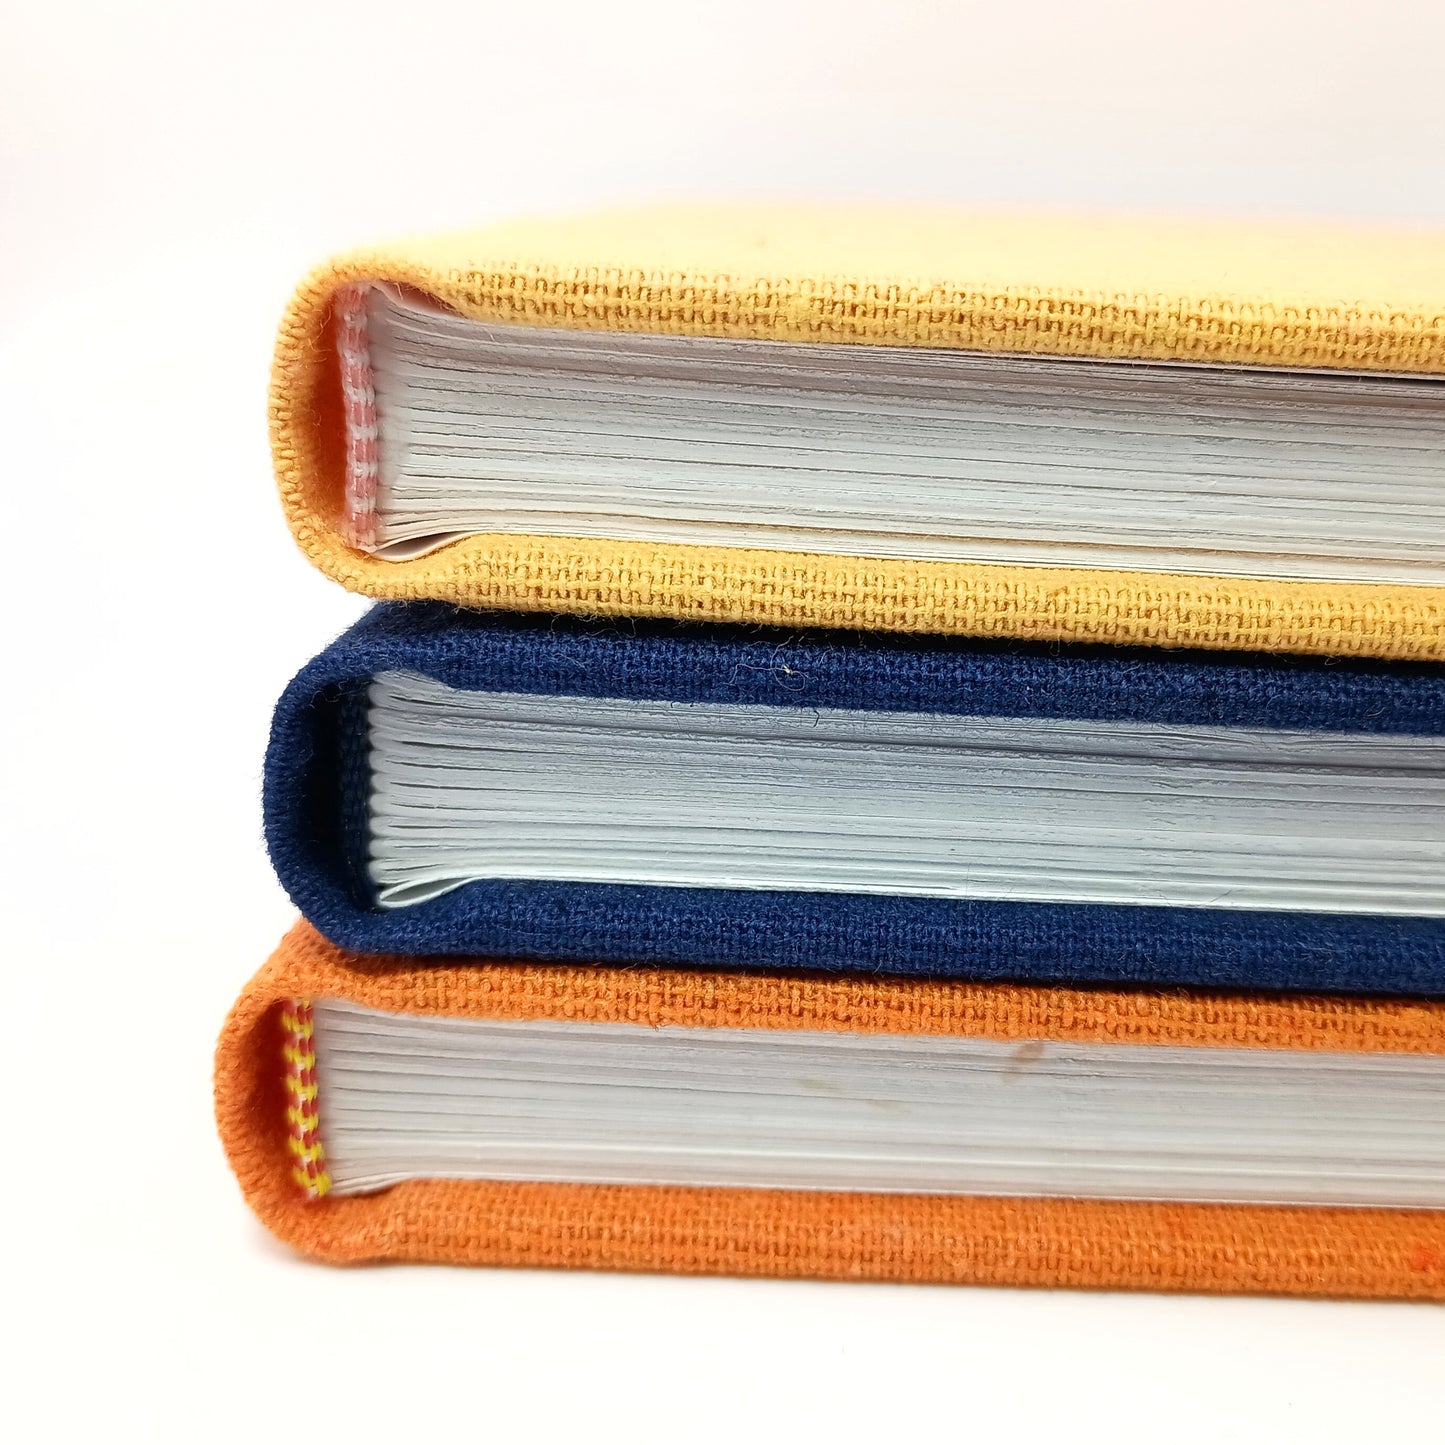 Large Linen Casebound Journals